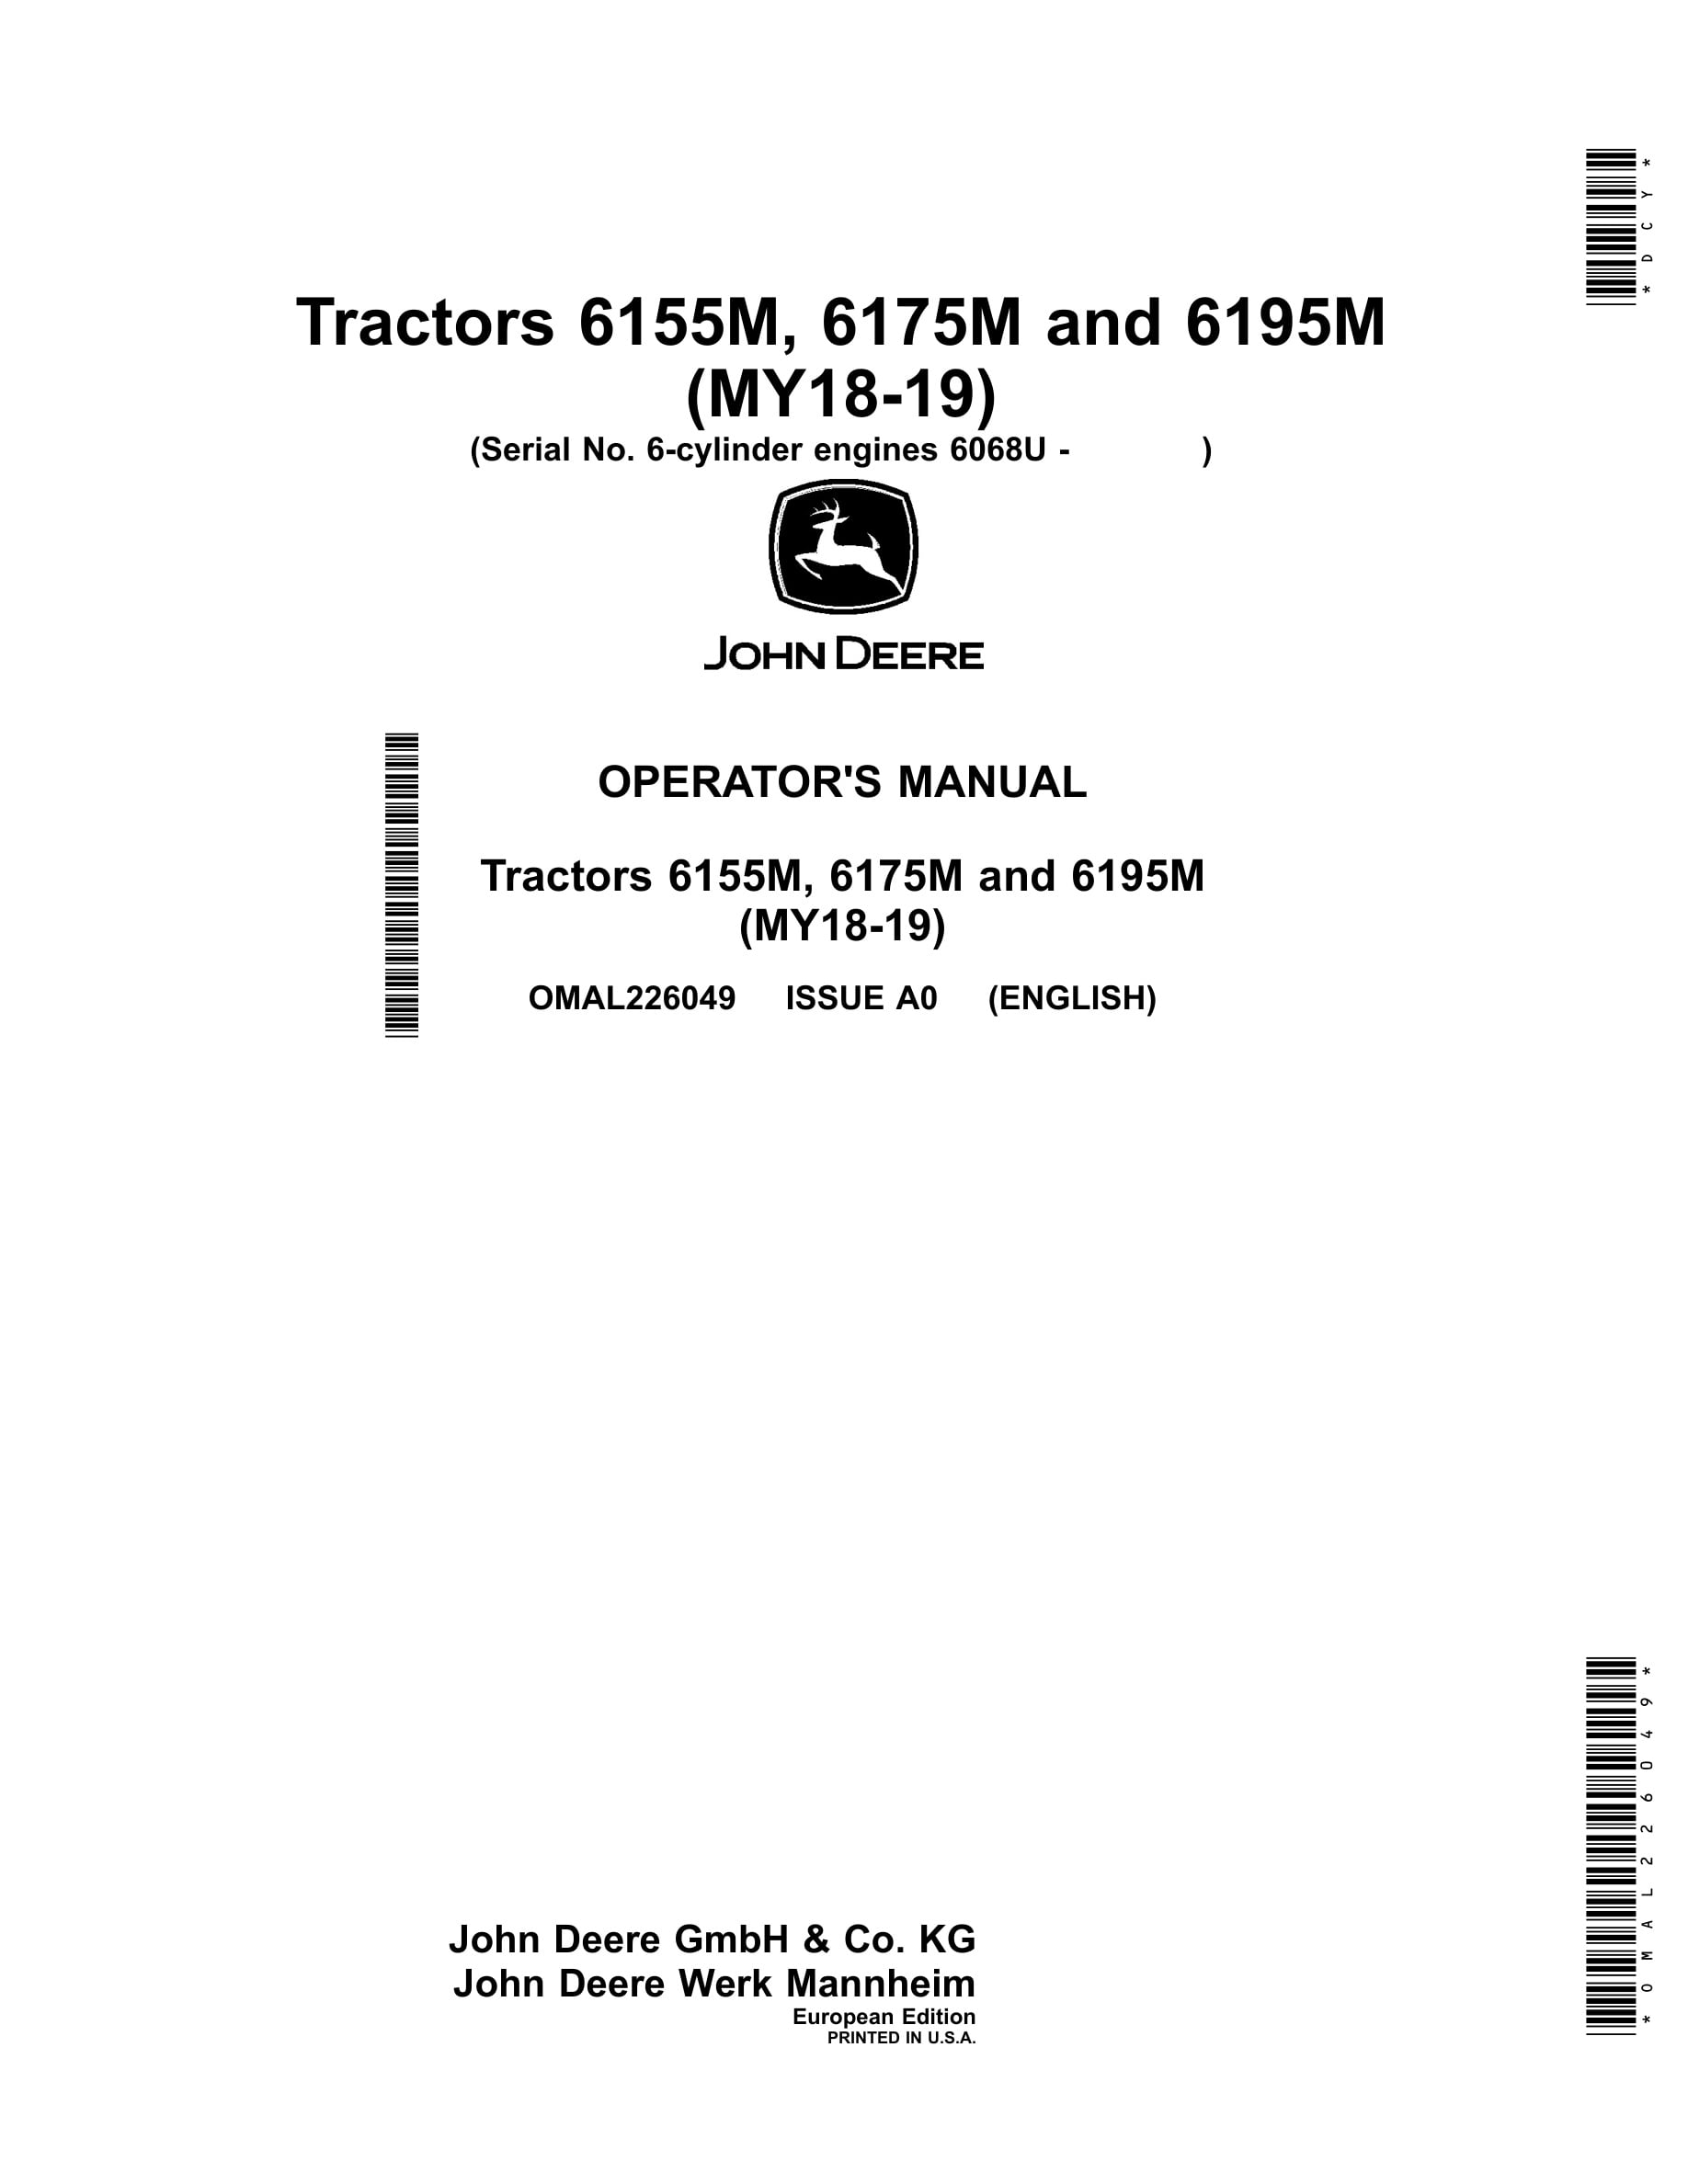 John Deere 6155m, 6175m And 6195m Tractors Operator Manuals OMAL226049-1